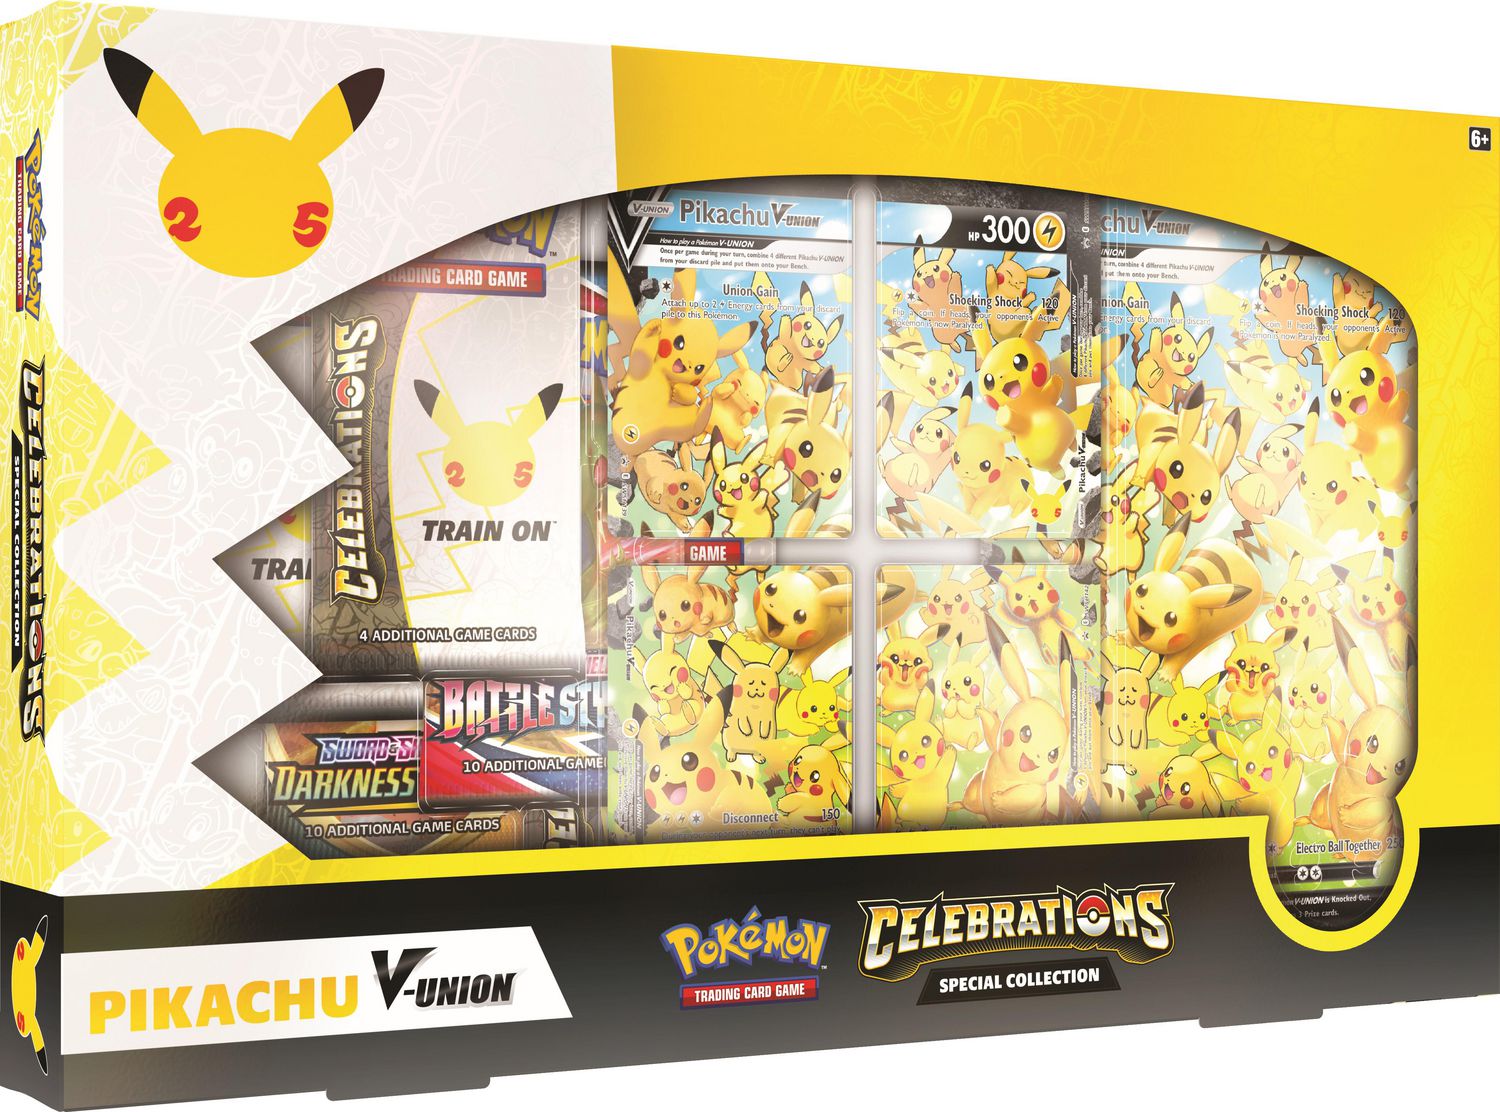 Invitations de fête Pokémon mettant en vedette Pikachu, paq. 8